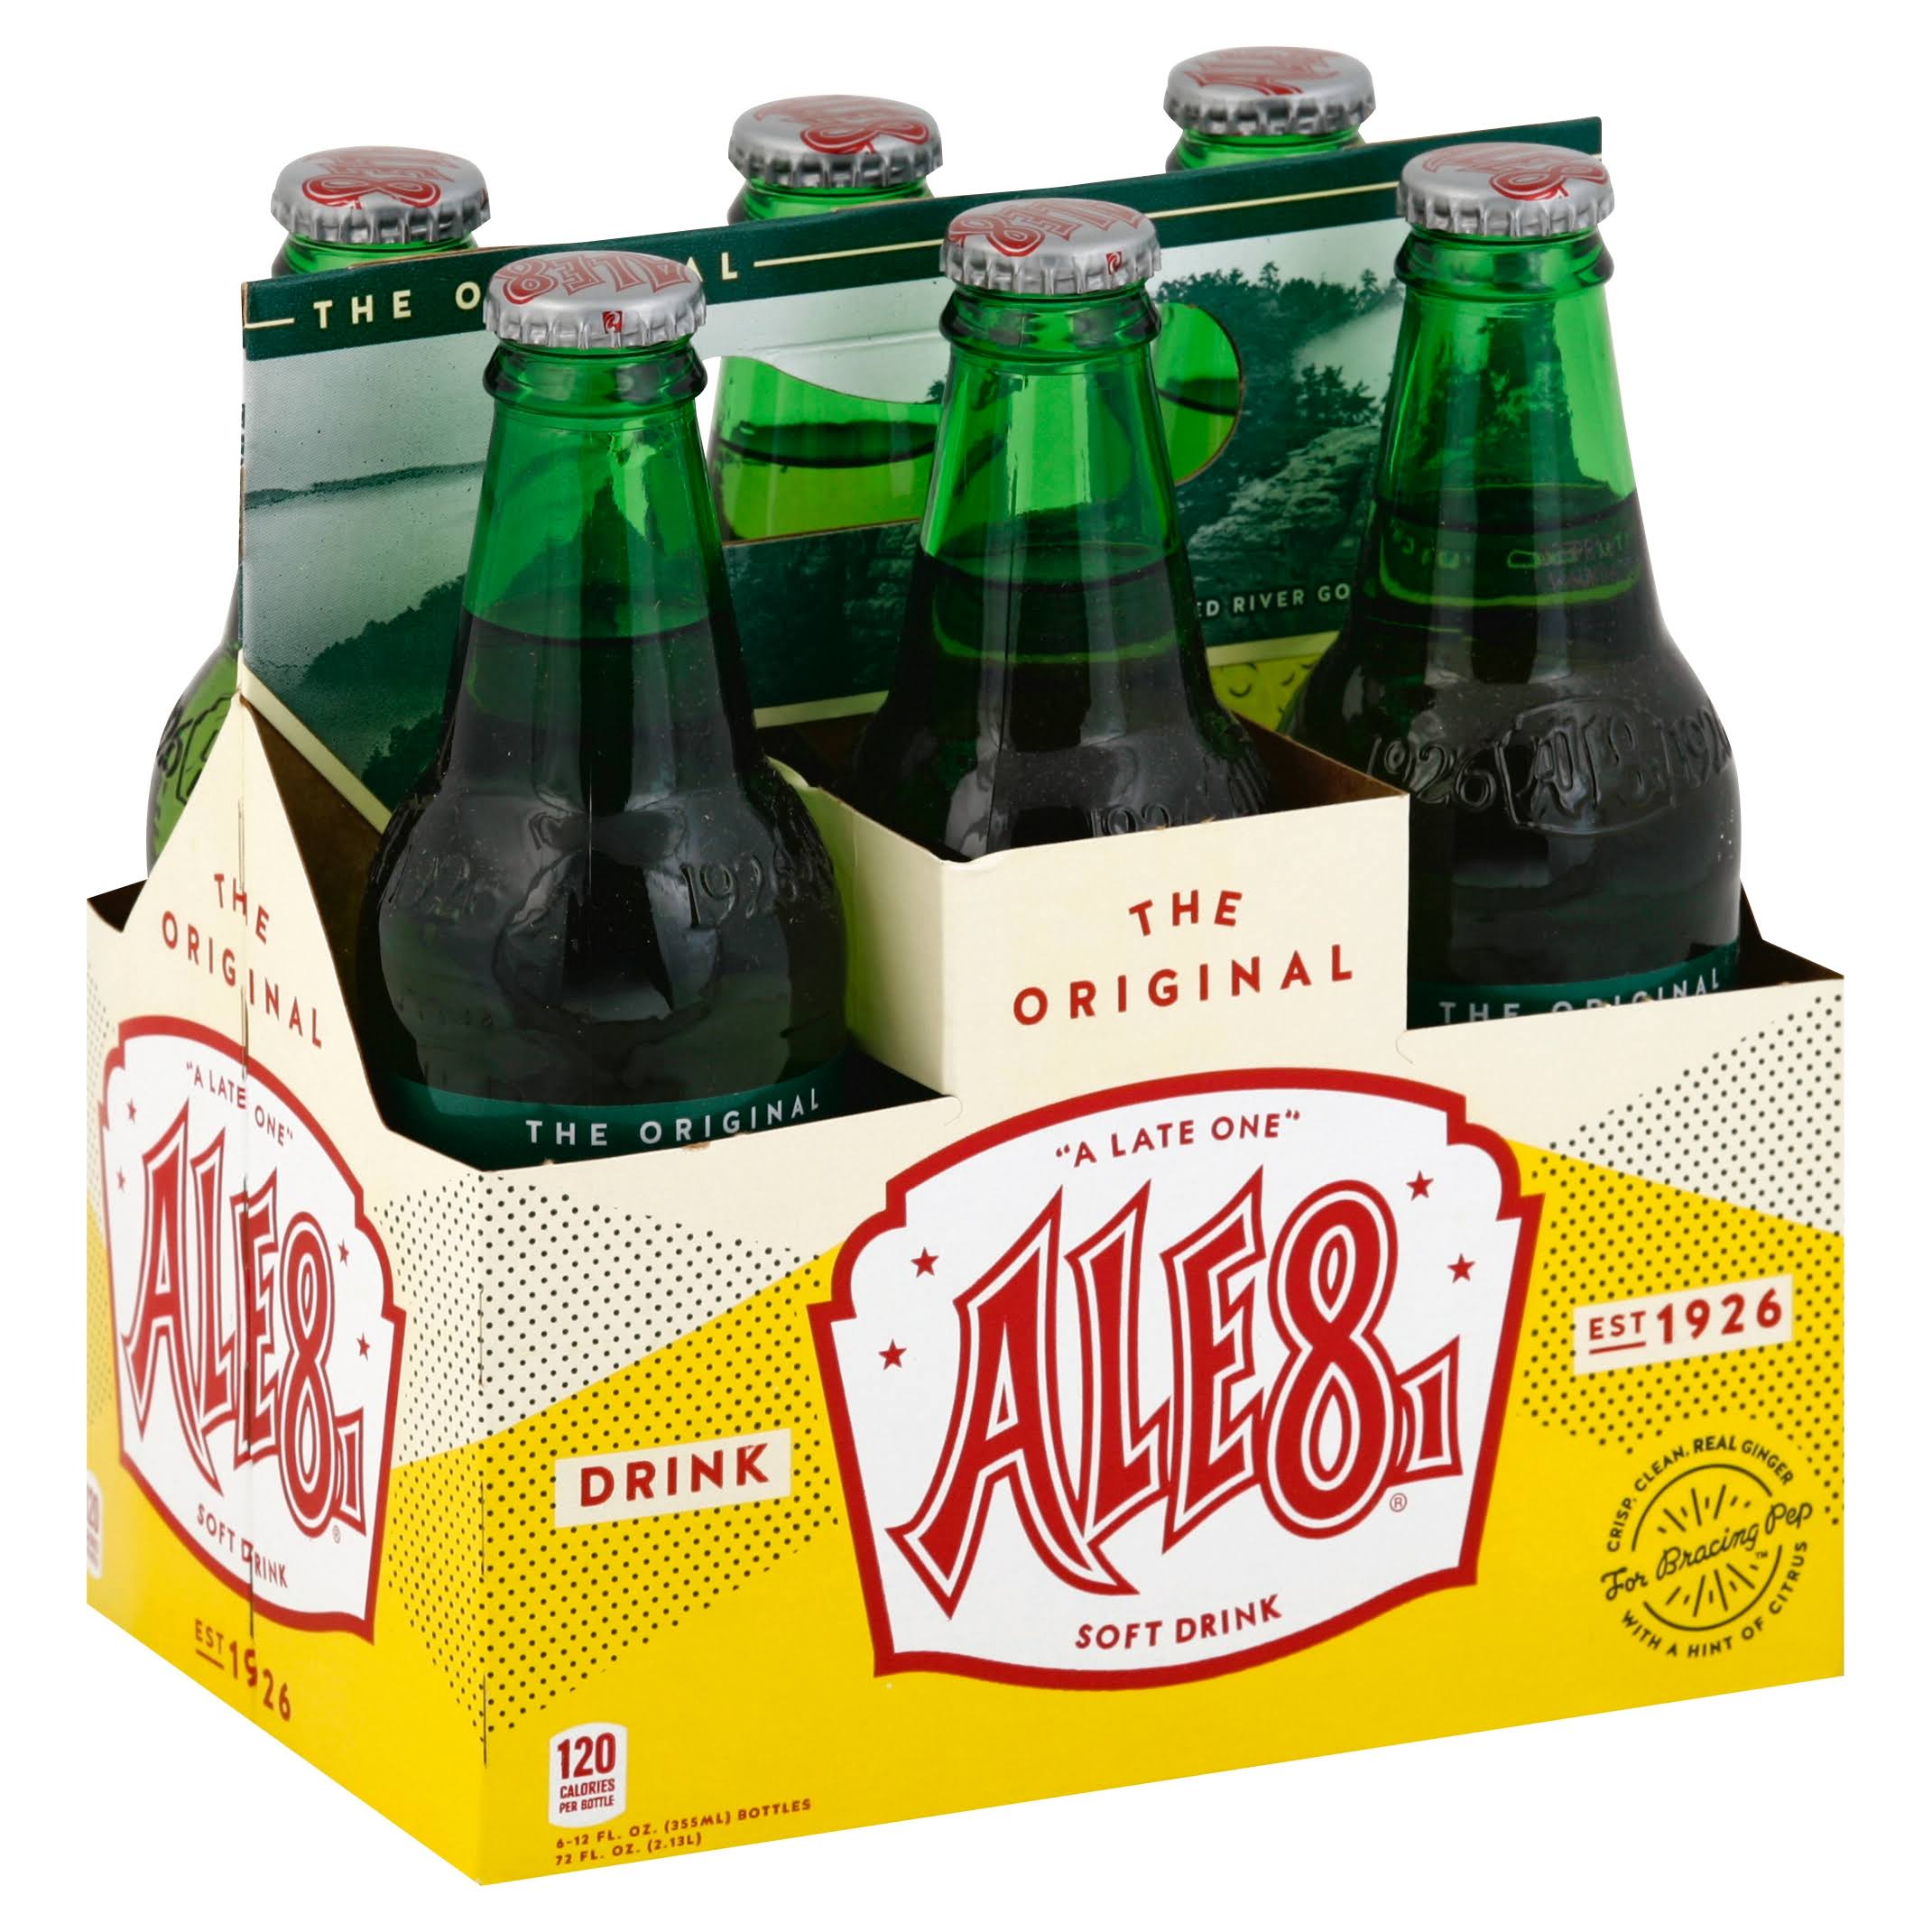 Ale81 Soft Drink, The Original - 6 pack, 12 fl oz bottles